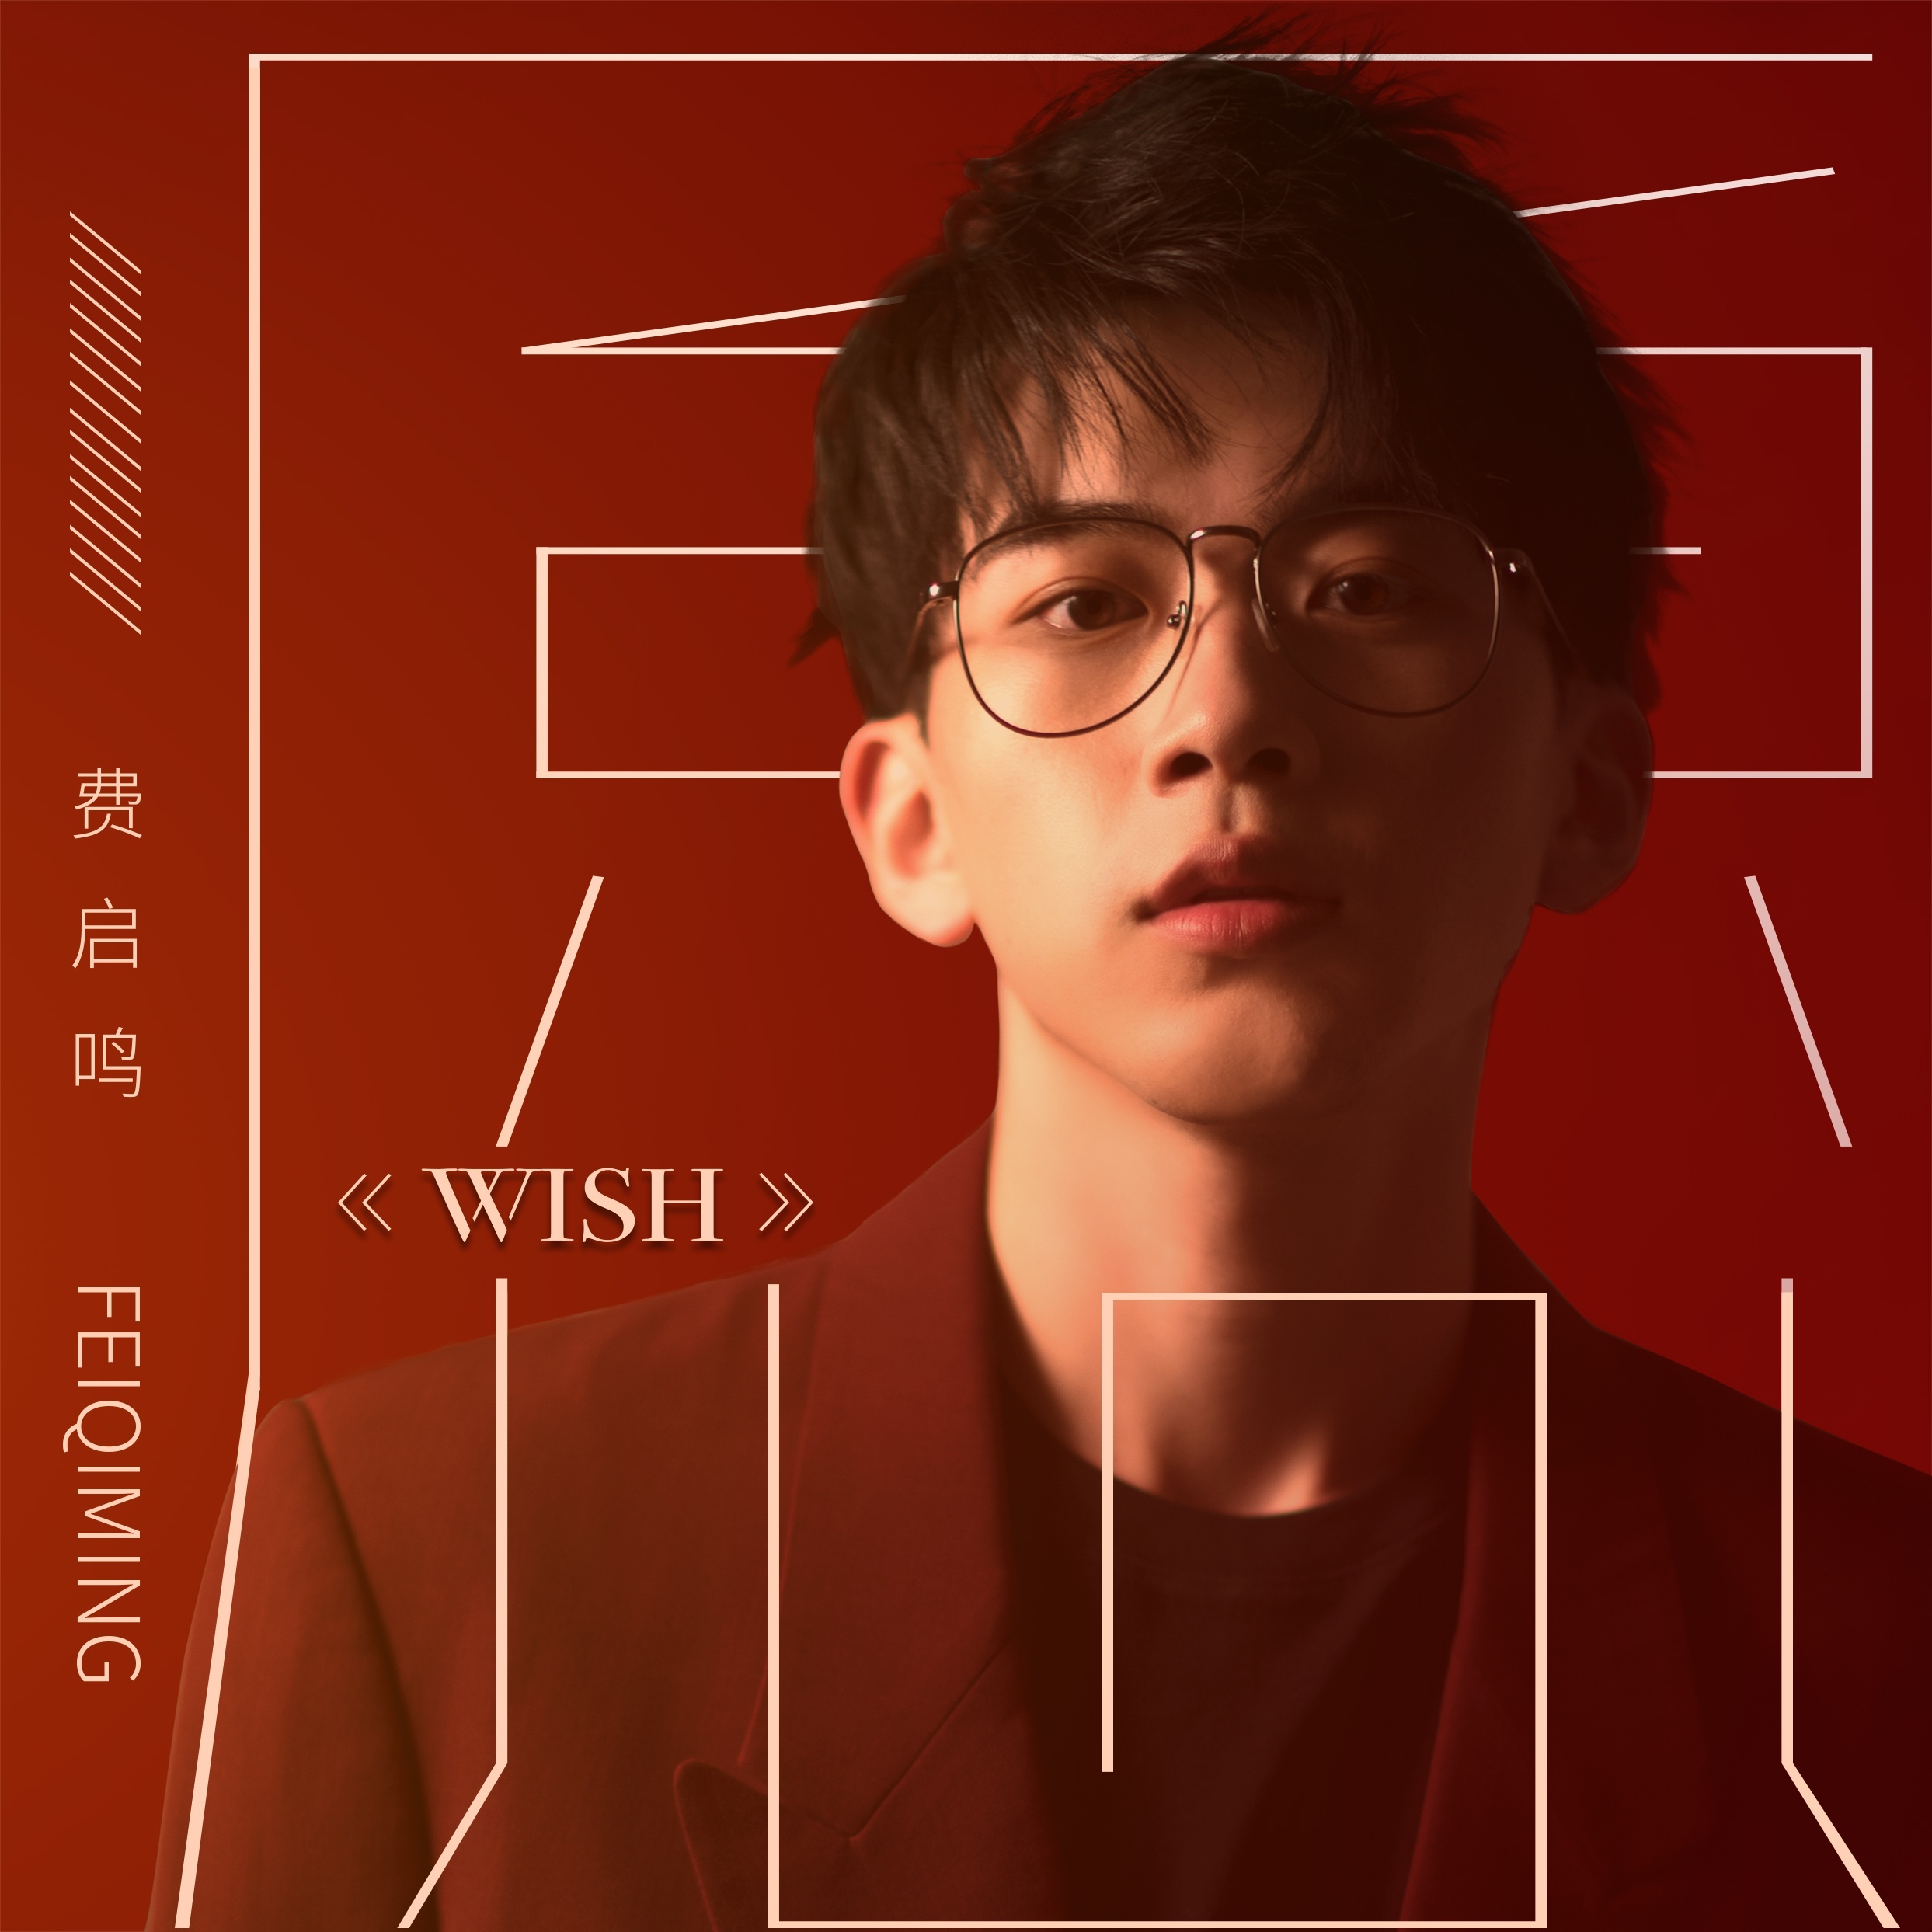 Wish(費啟鳴演唱歌曲)